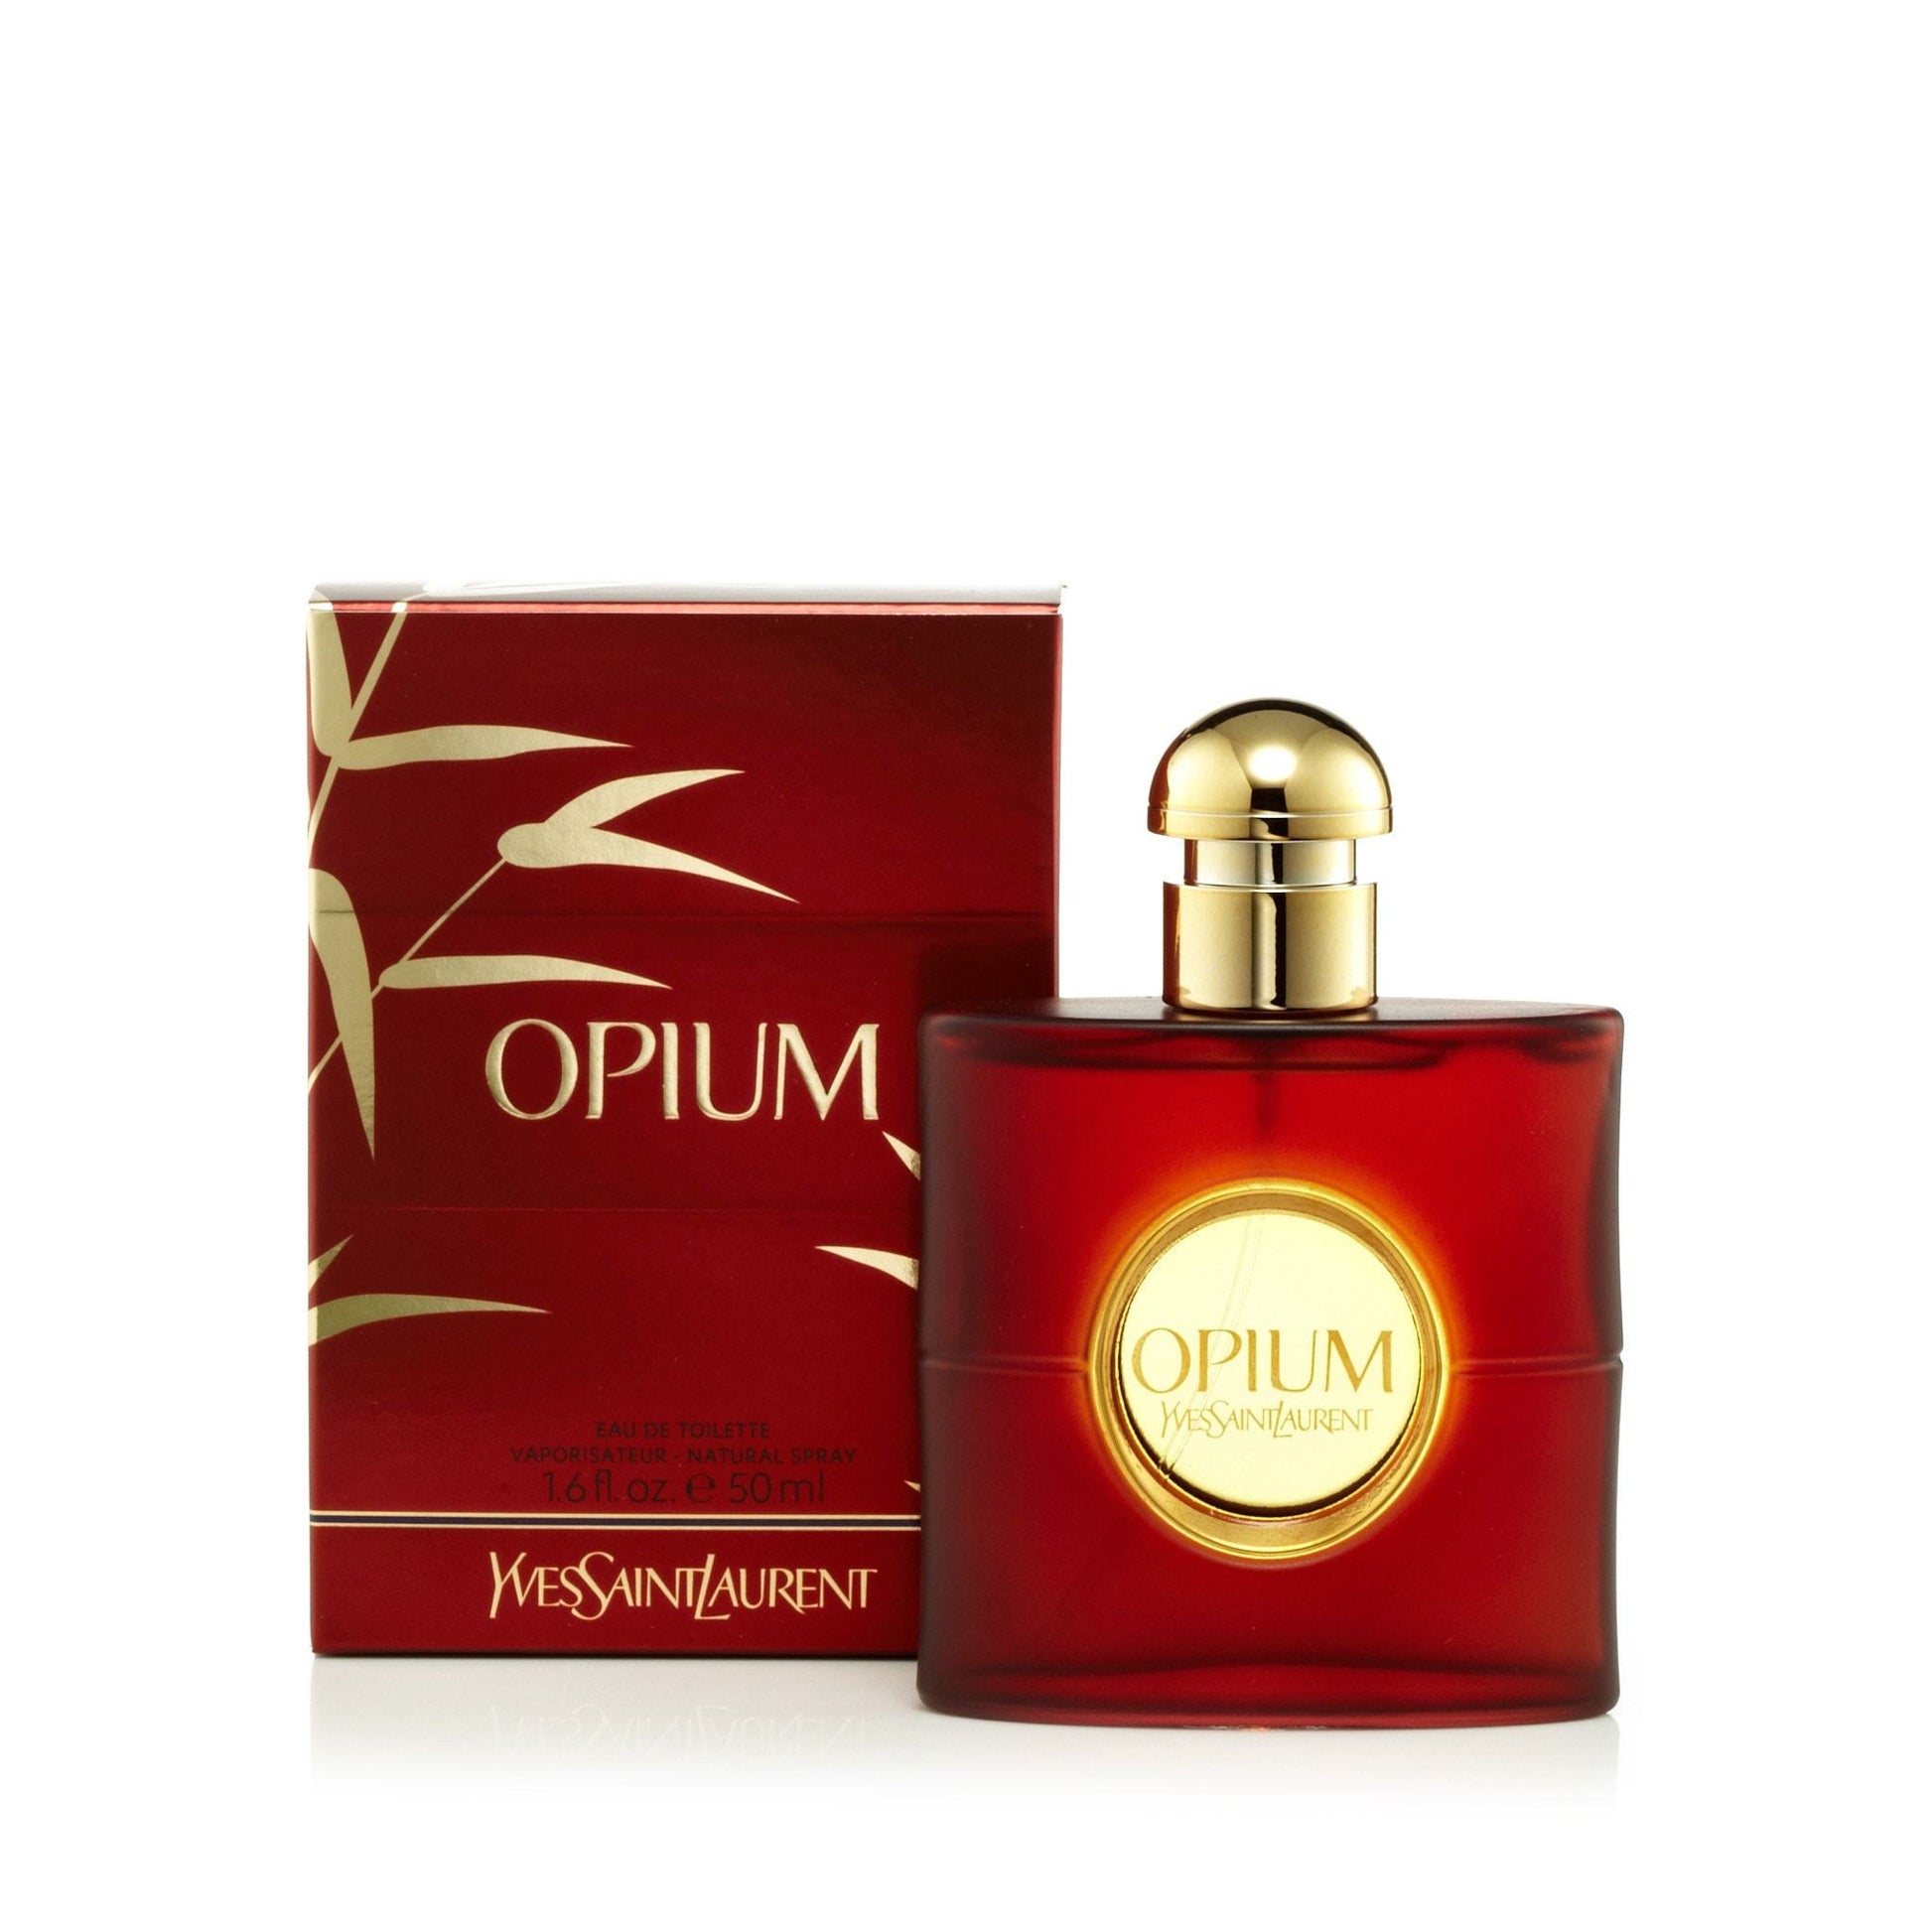 Opium Eau de Toilette Spray for Women by Yves Saint Laurent, Product image 4